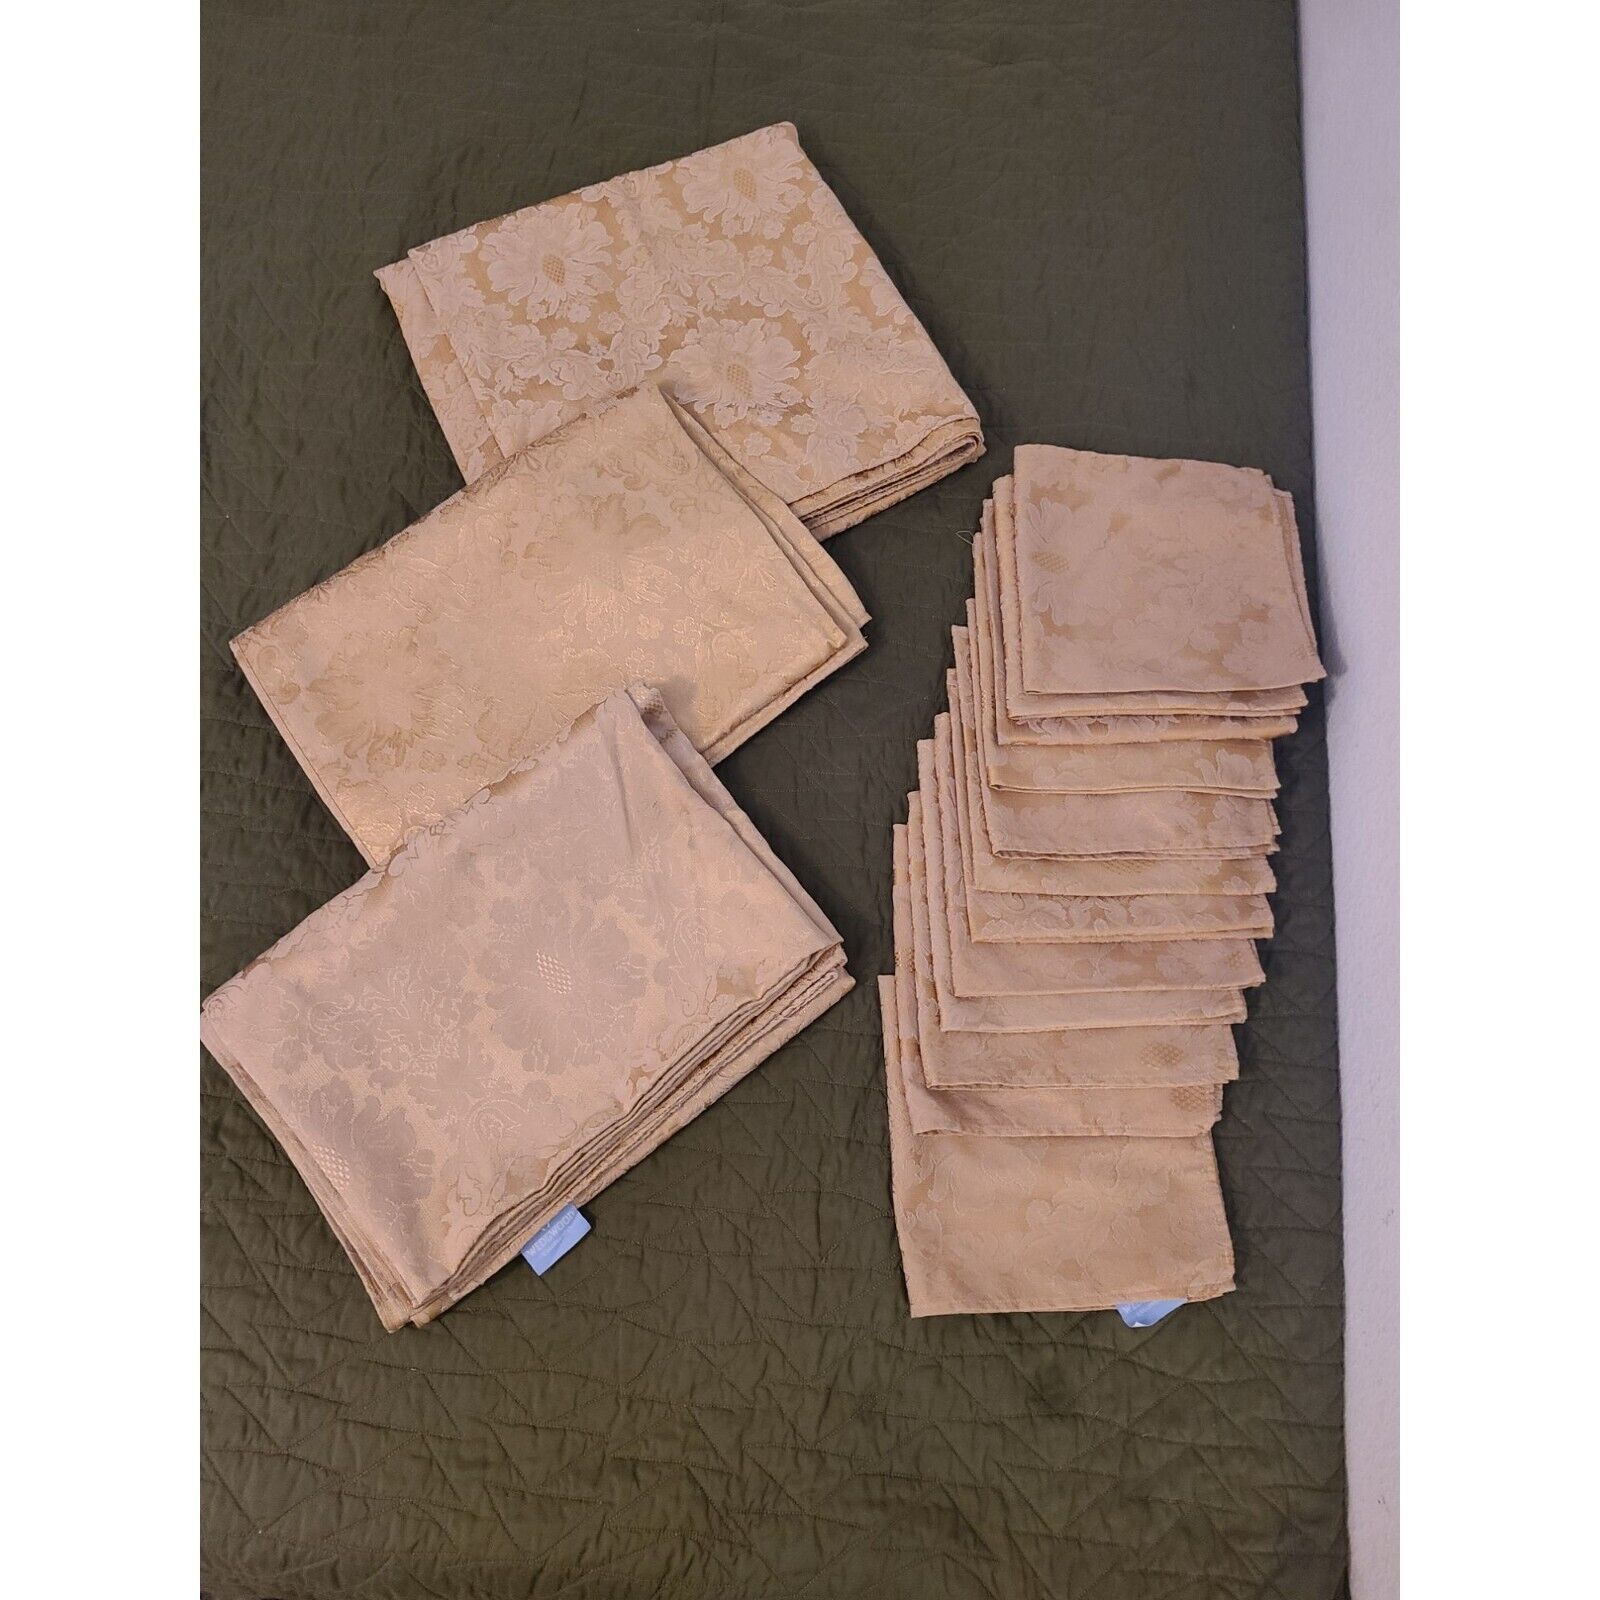 3 Vintage Wedgwood Golden Formal Tablecloths & 12 Napkins Set